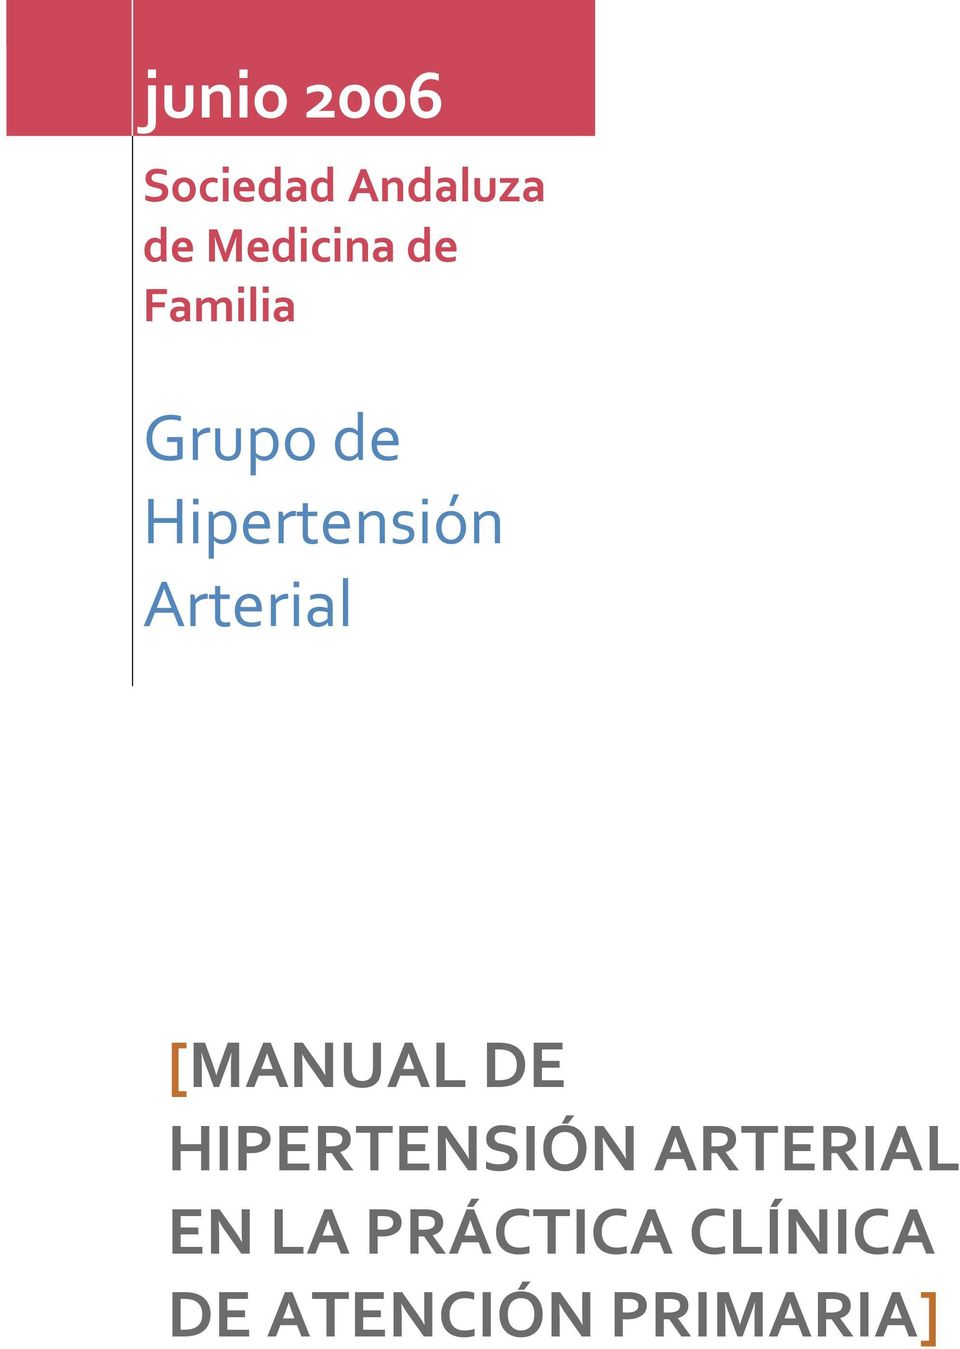 Hipertensión Arterial [MANUAL DE